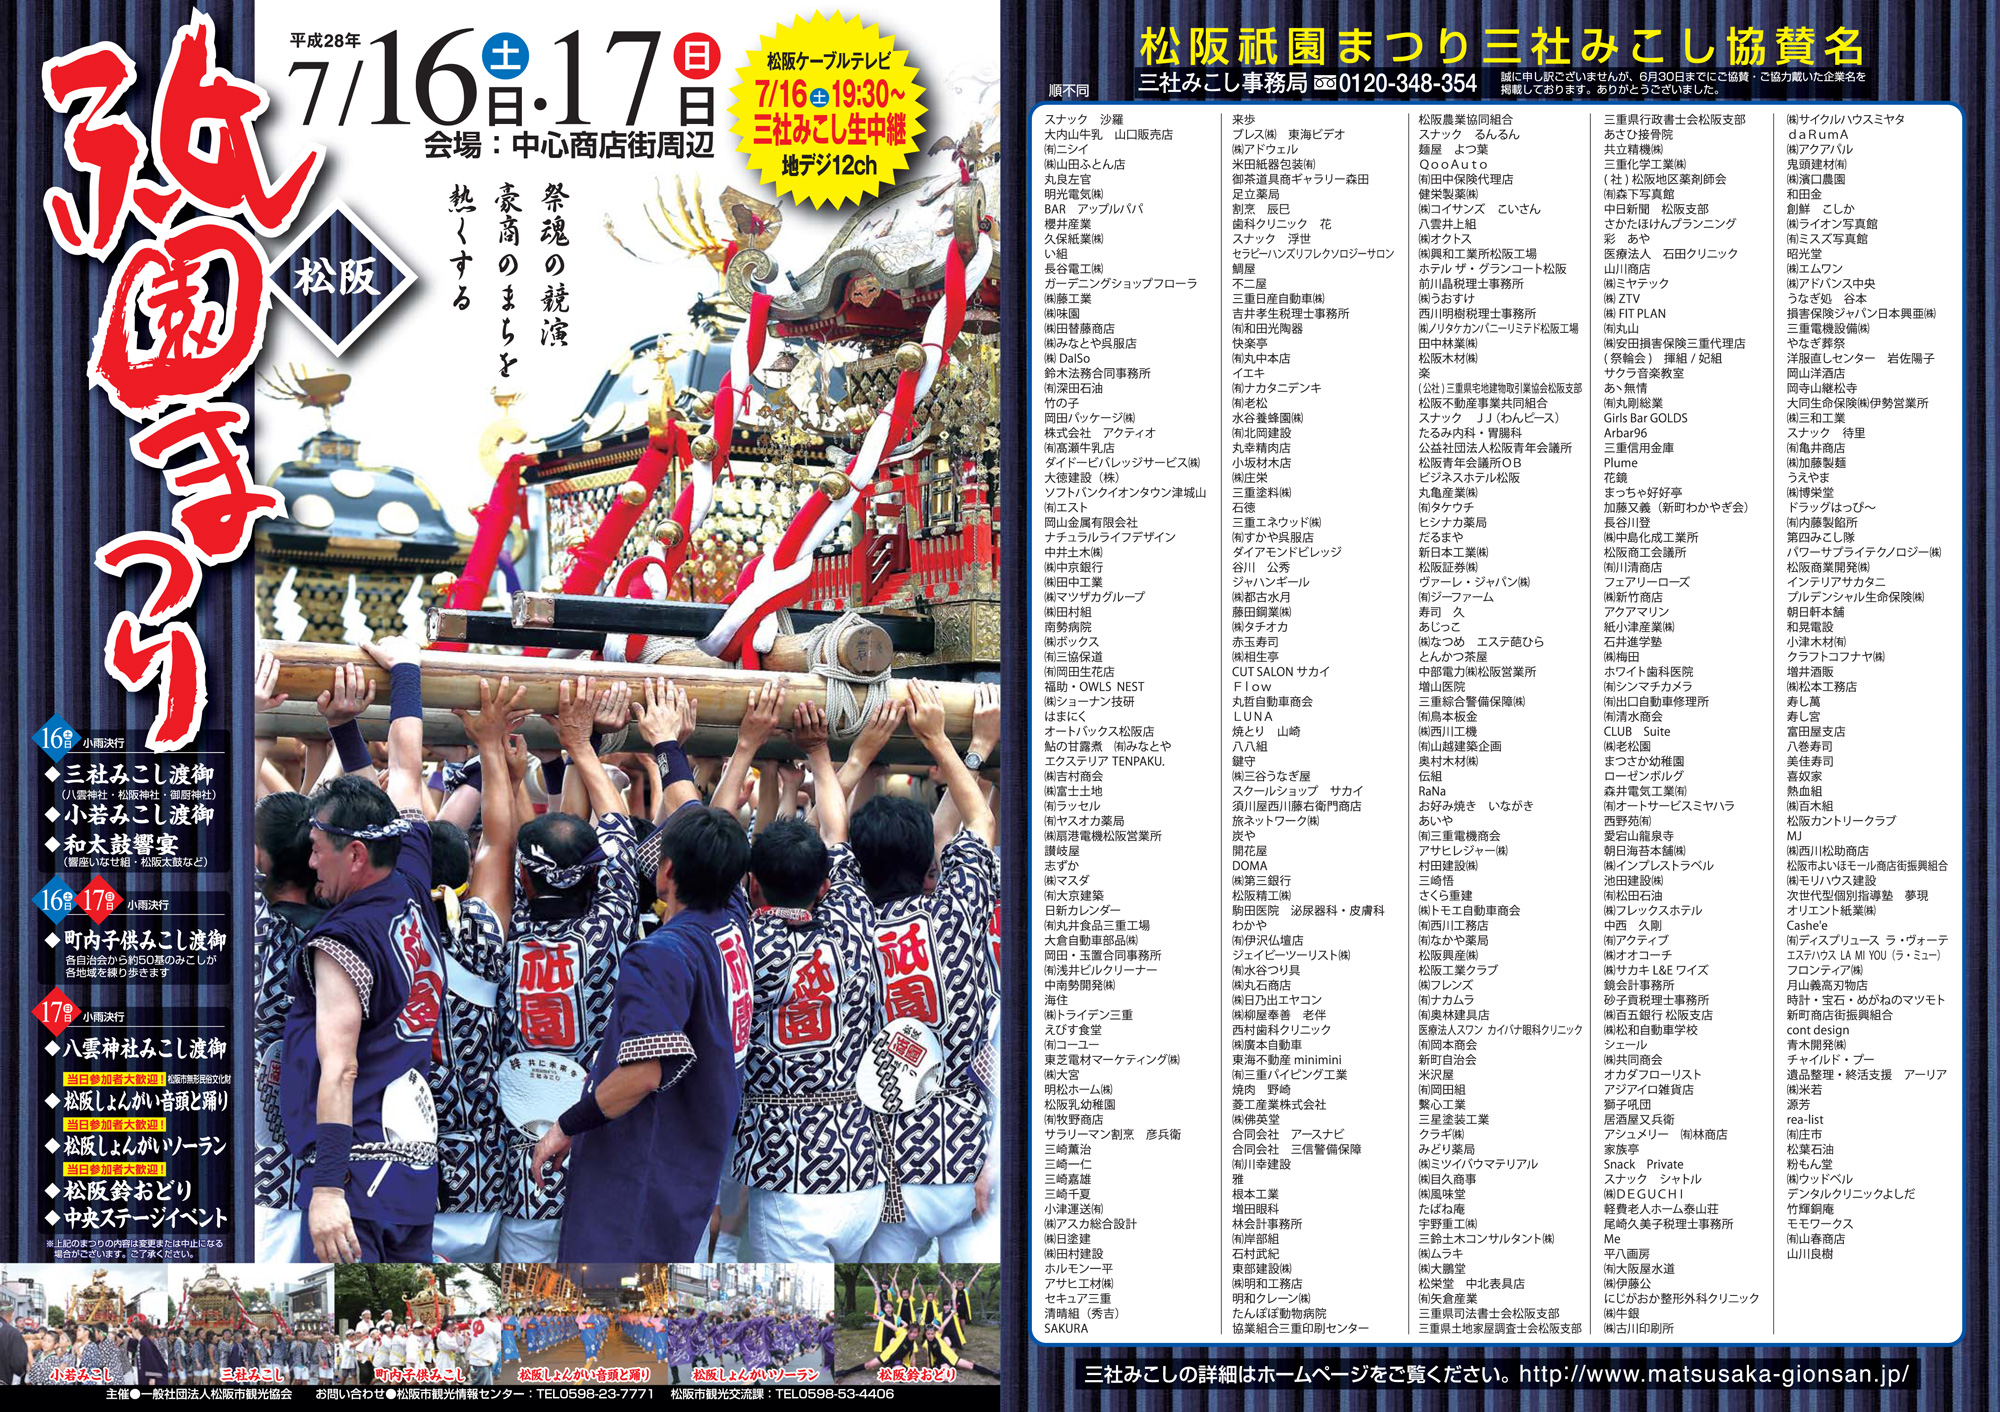 平成28年7月16日 土 7月17日 日 祇園まつりチラシ出来ました 松阪市観光協会